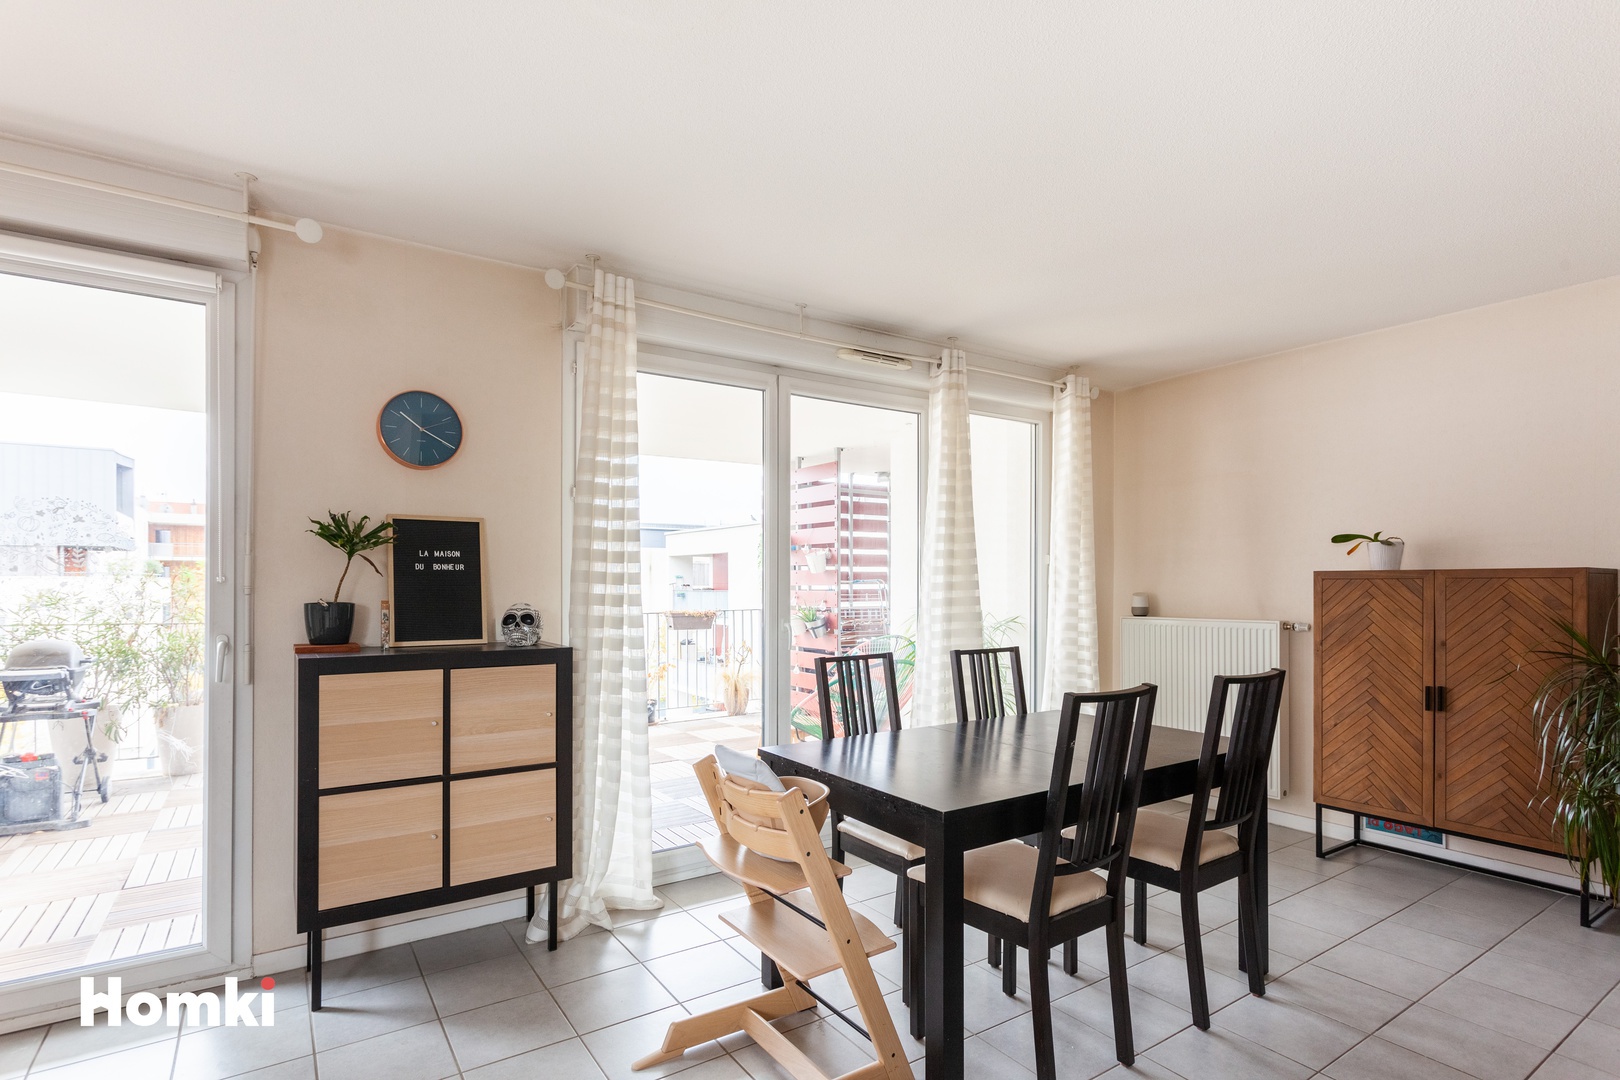 Homki - Vente Appartement  de 73.0 m² à Grenoble 38100